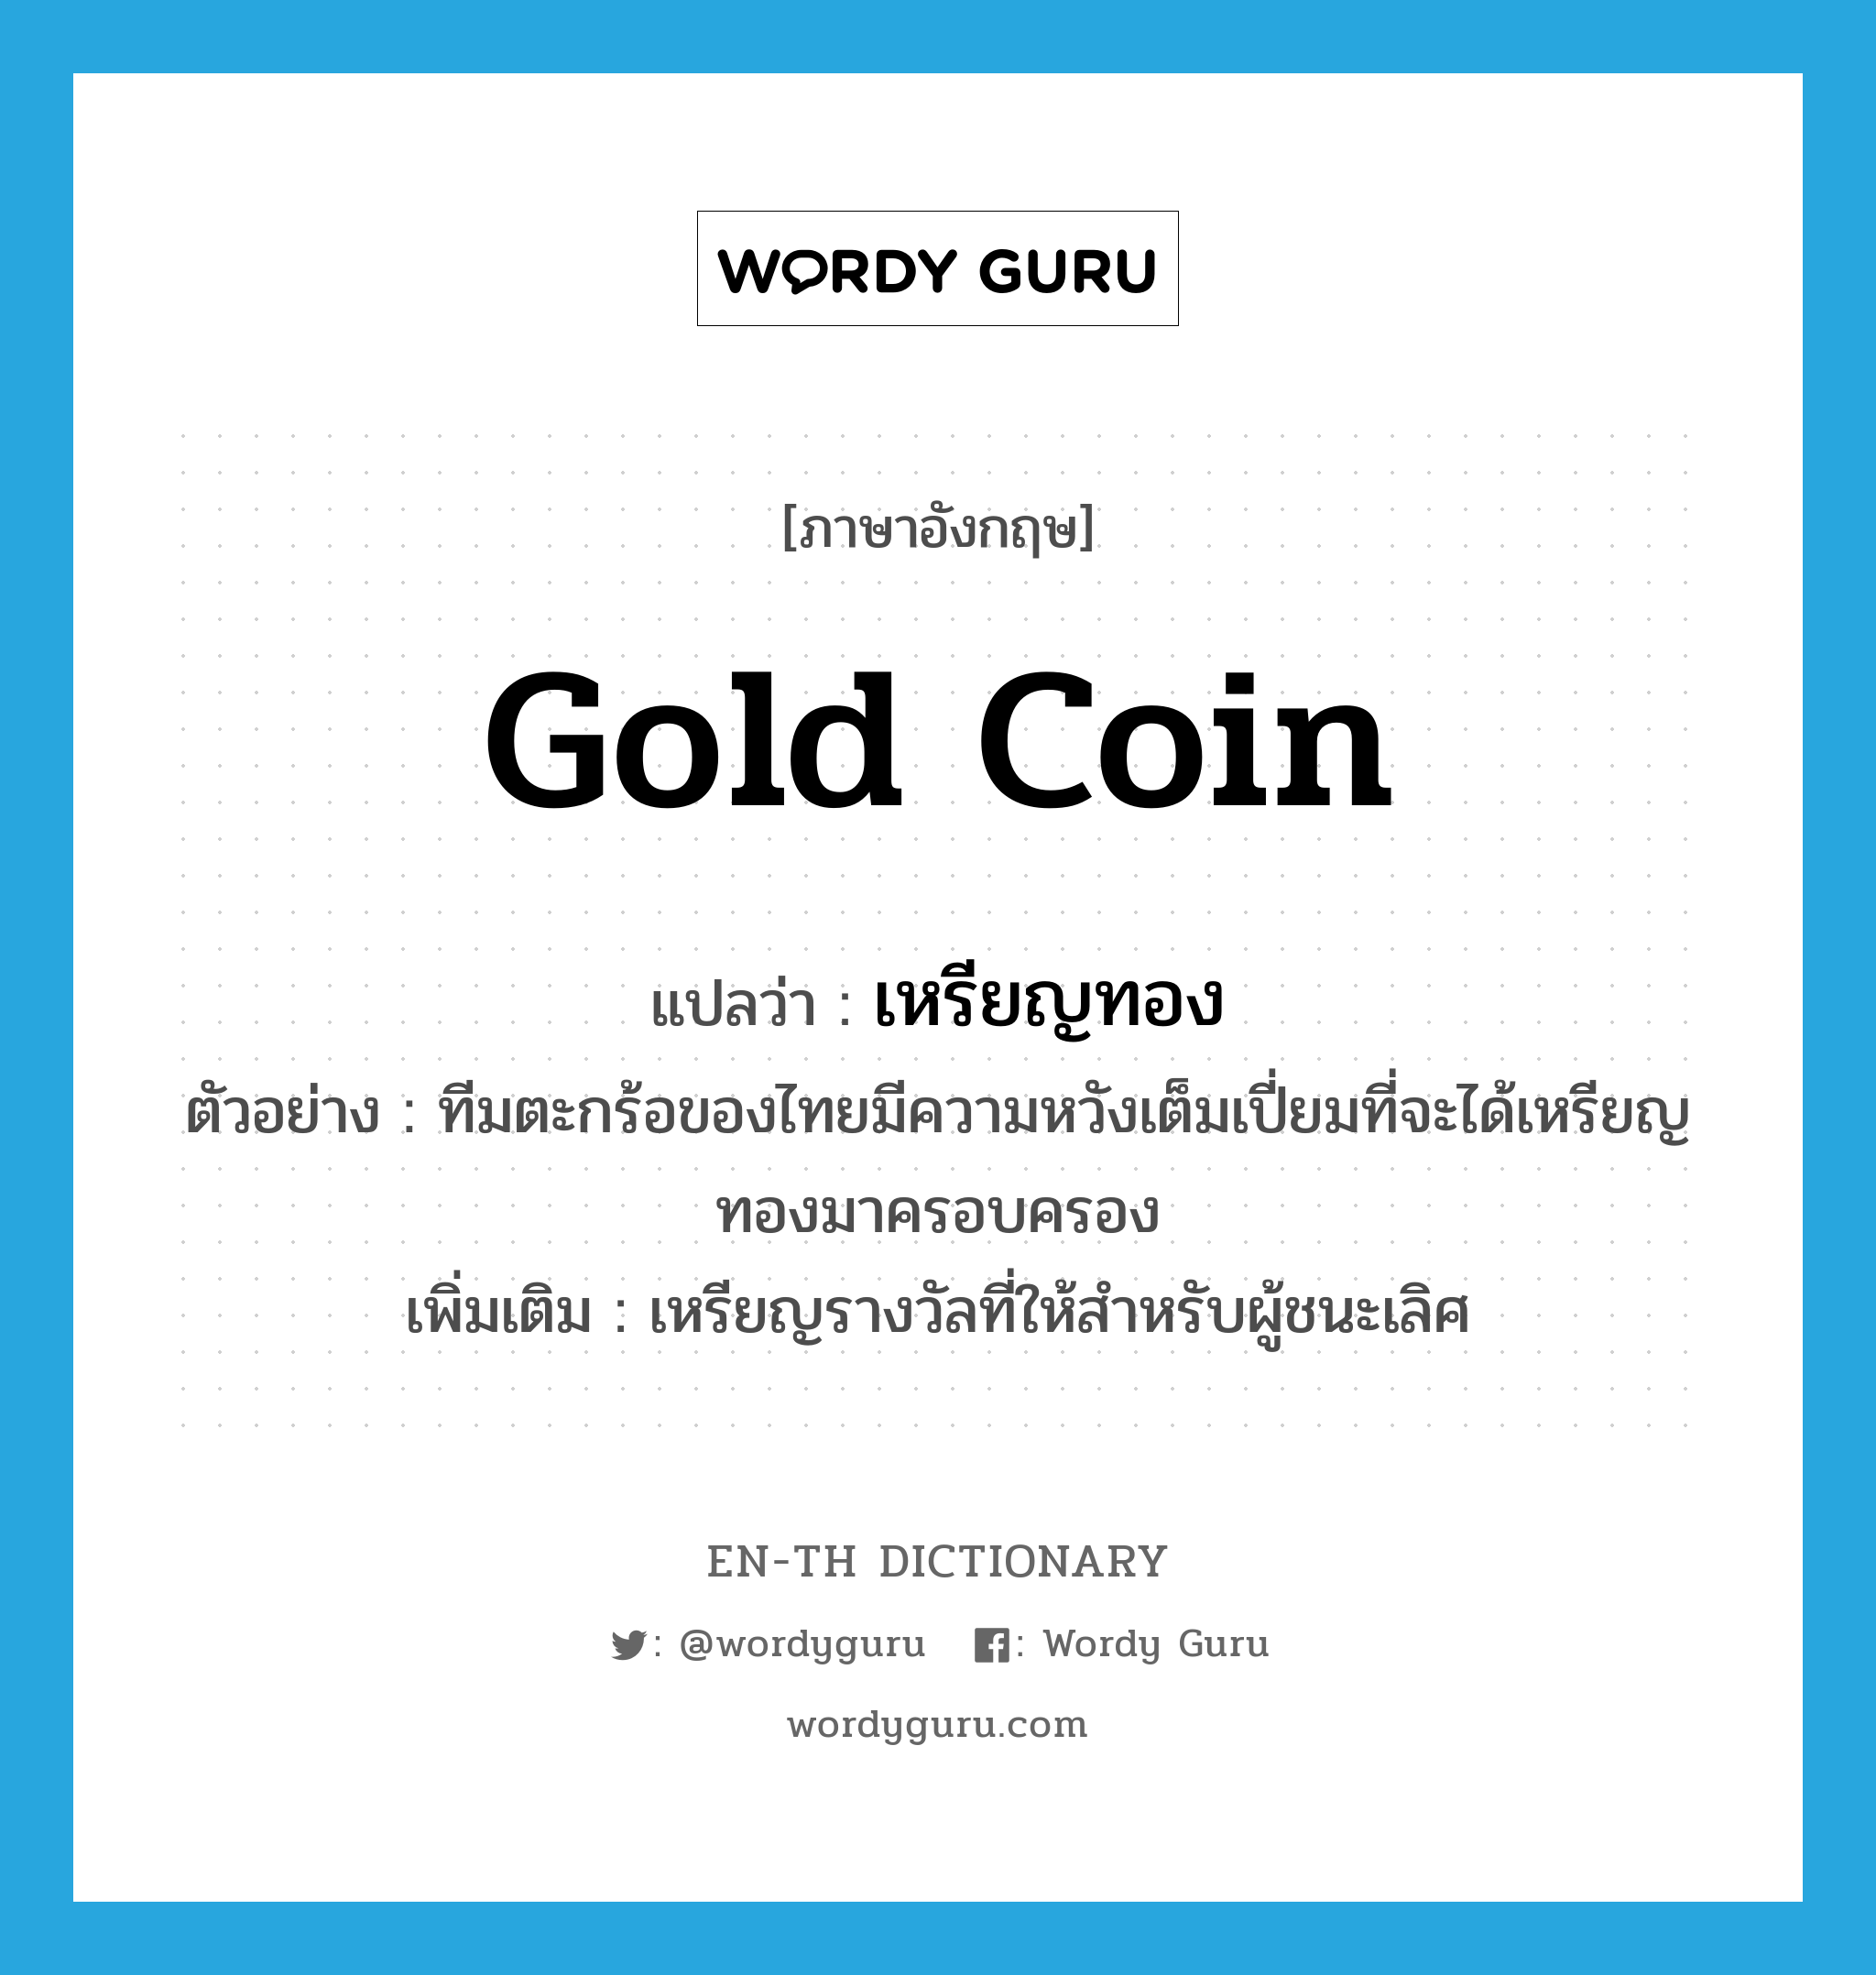 gold coin แปลว่า?, คำศัพท์ภาษาอังกฤษ gold coin แปลว่า เหรียญทอง ประเภท N ตัวอย่าง ทีมตะกร้อของไทยมีความหวังเต็มเปี่ยมที่จะได้เหรียญทองมาครอบครอง เพิ่มเติม เหรียญรางวัลที่ให้สำหรับผู้ชนะเลิศ หมวด N